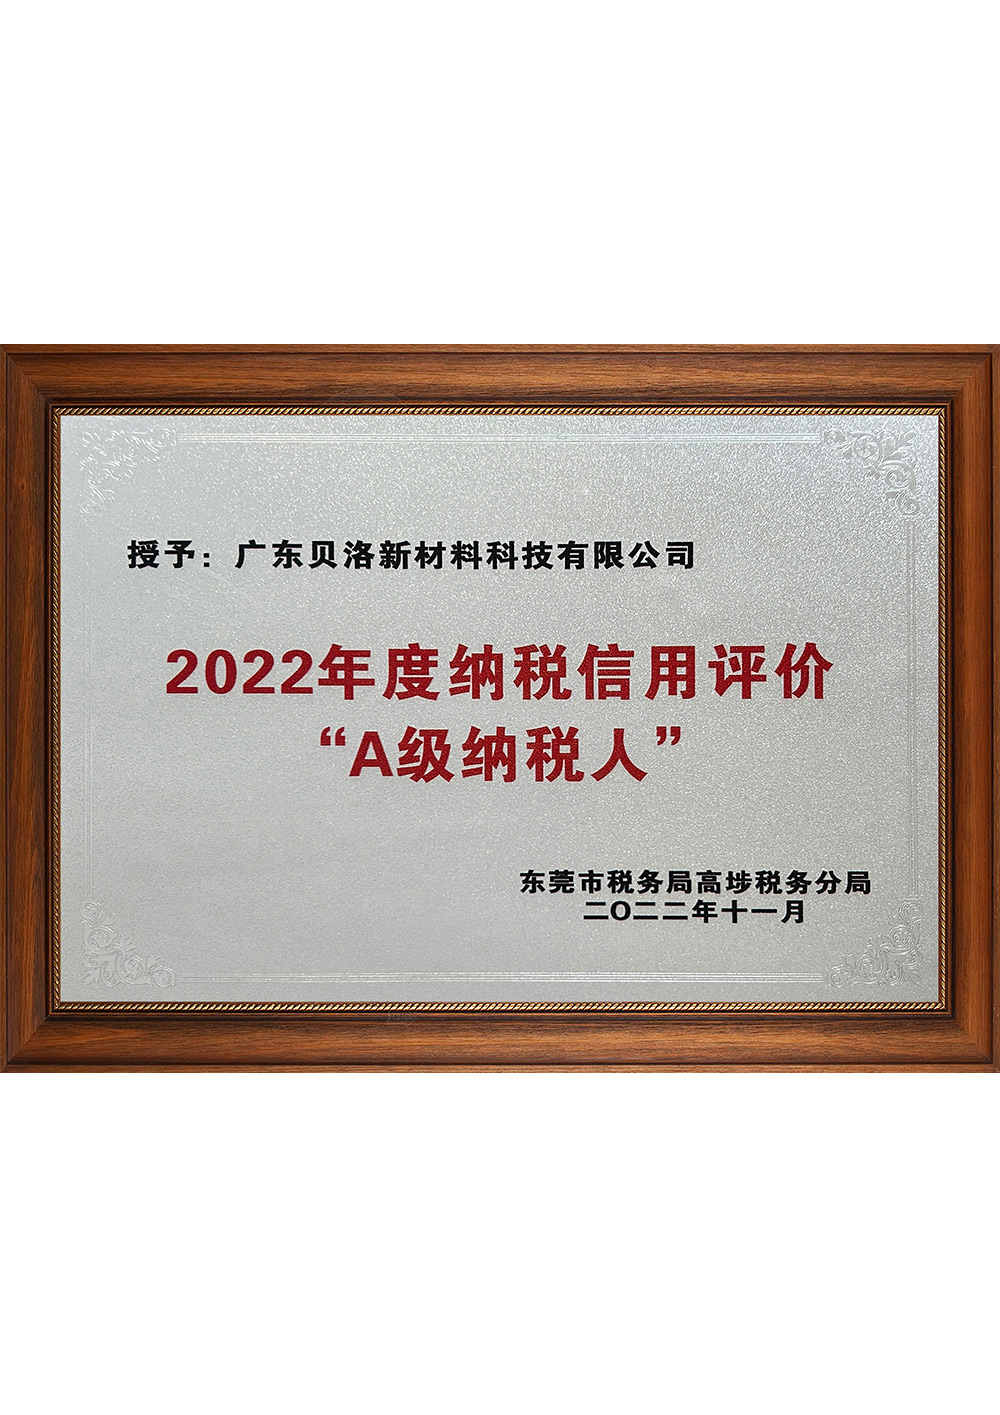 2022年度纳税信用评价“A级纳税人” 202211